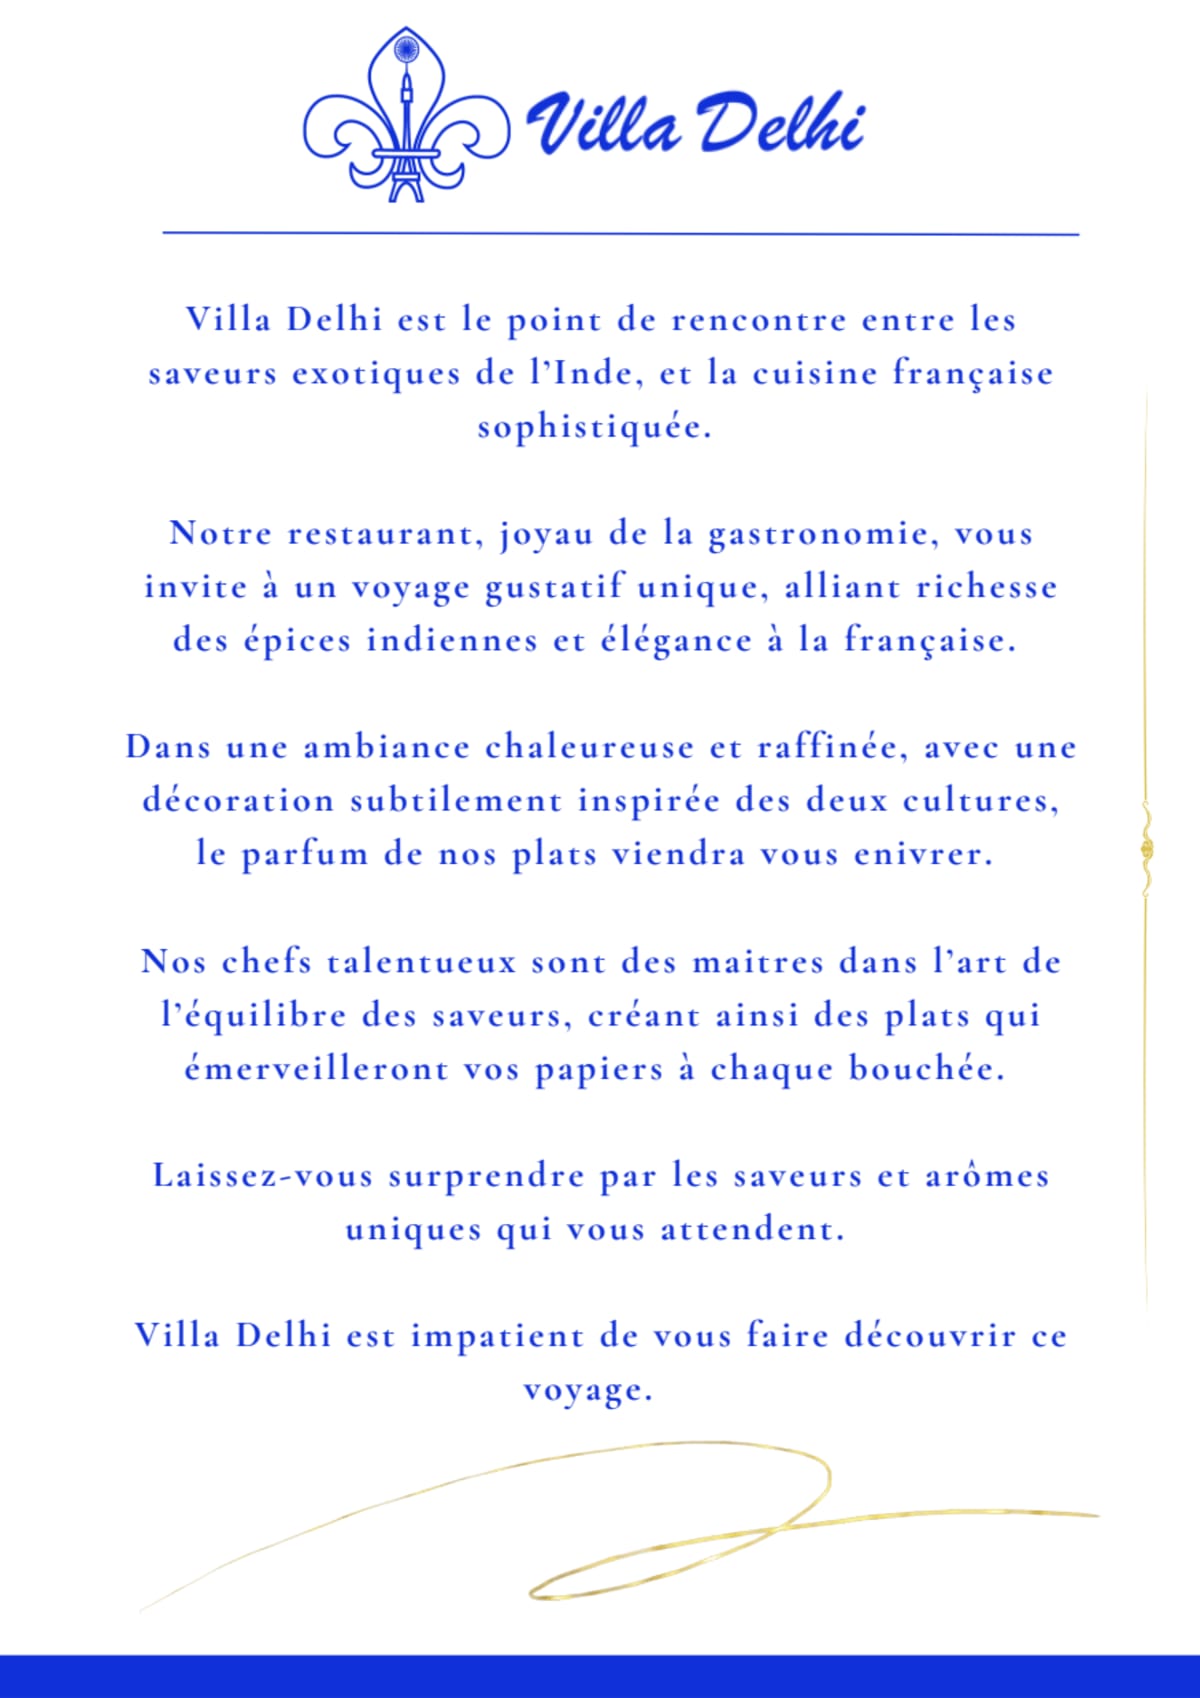 Villa Delhi menu